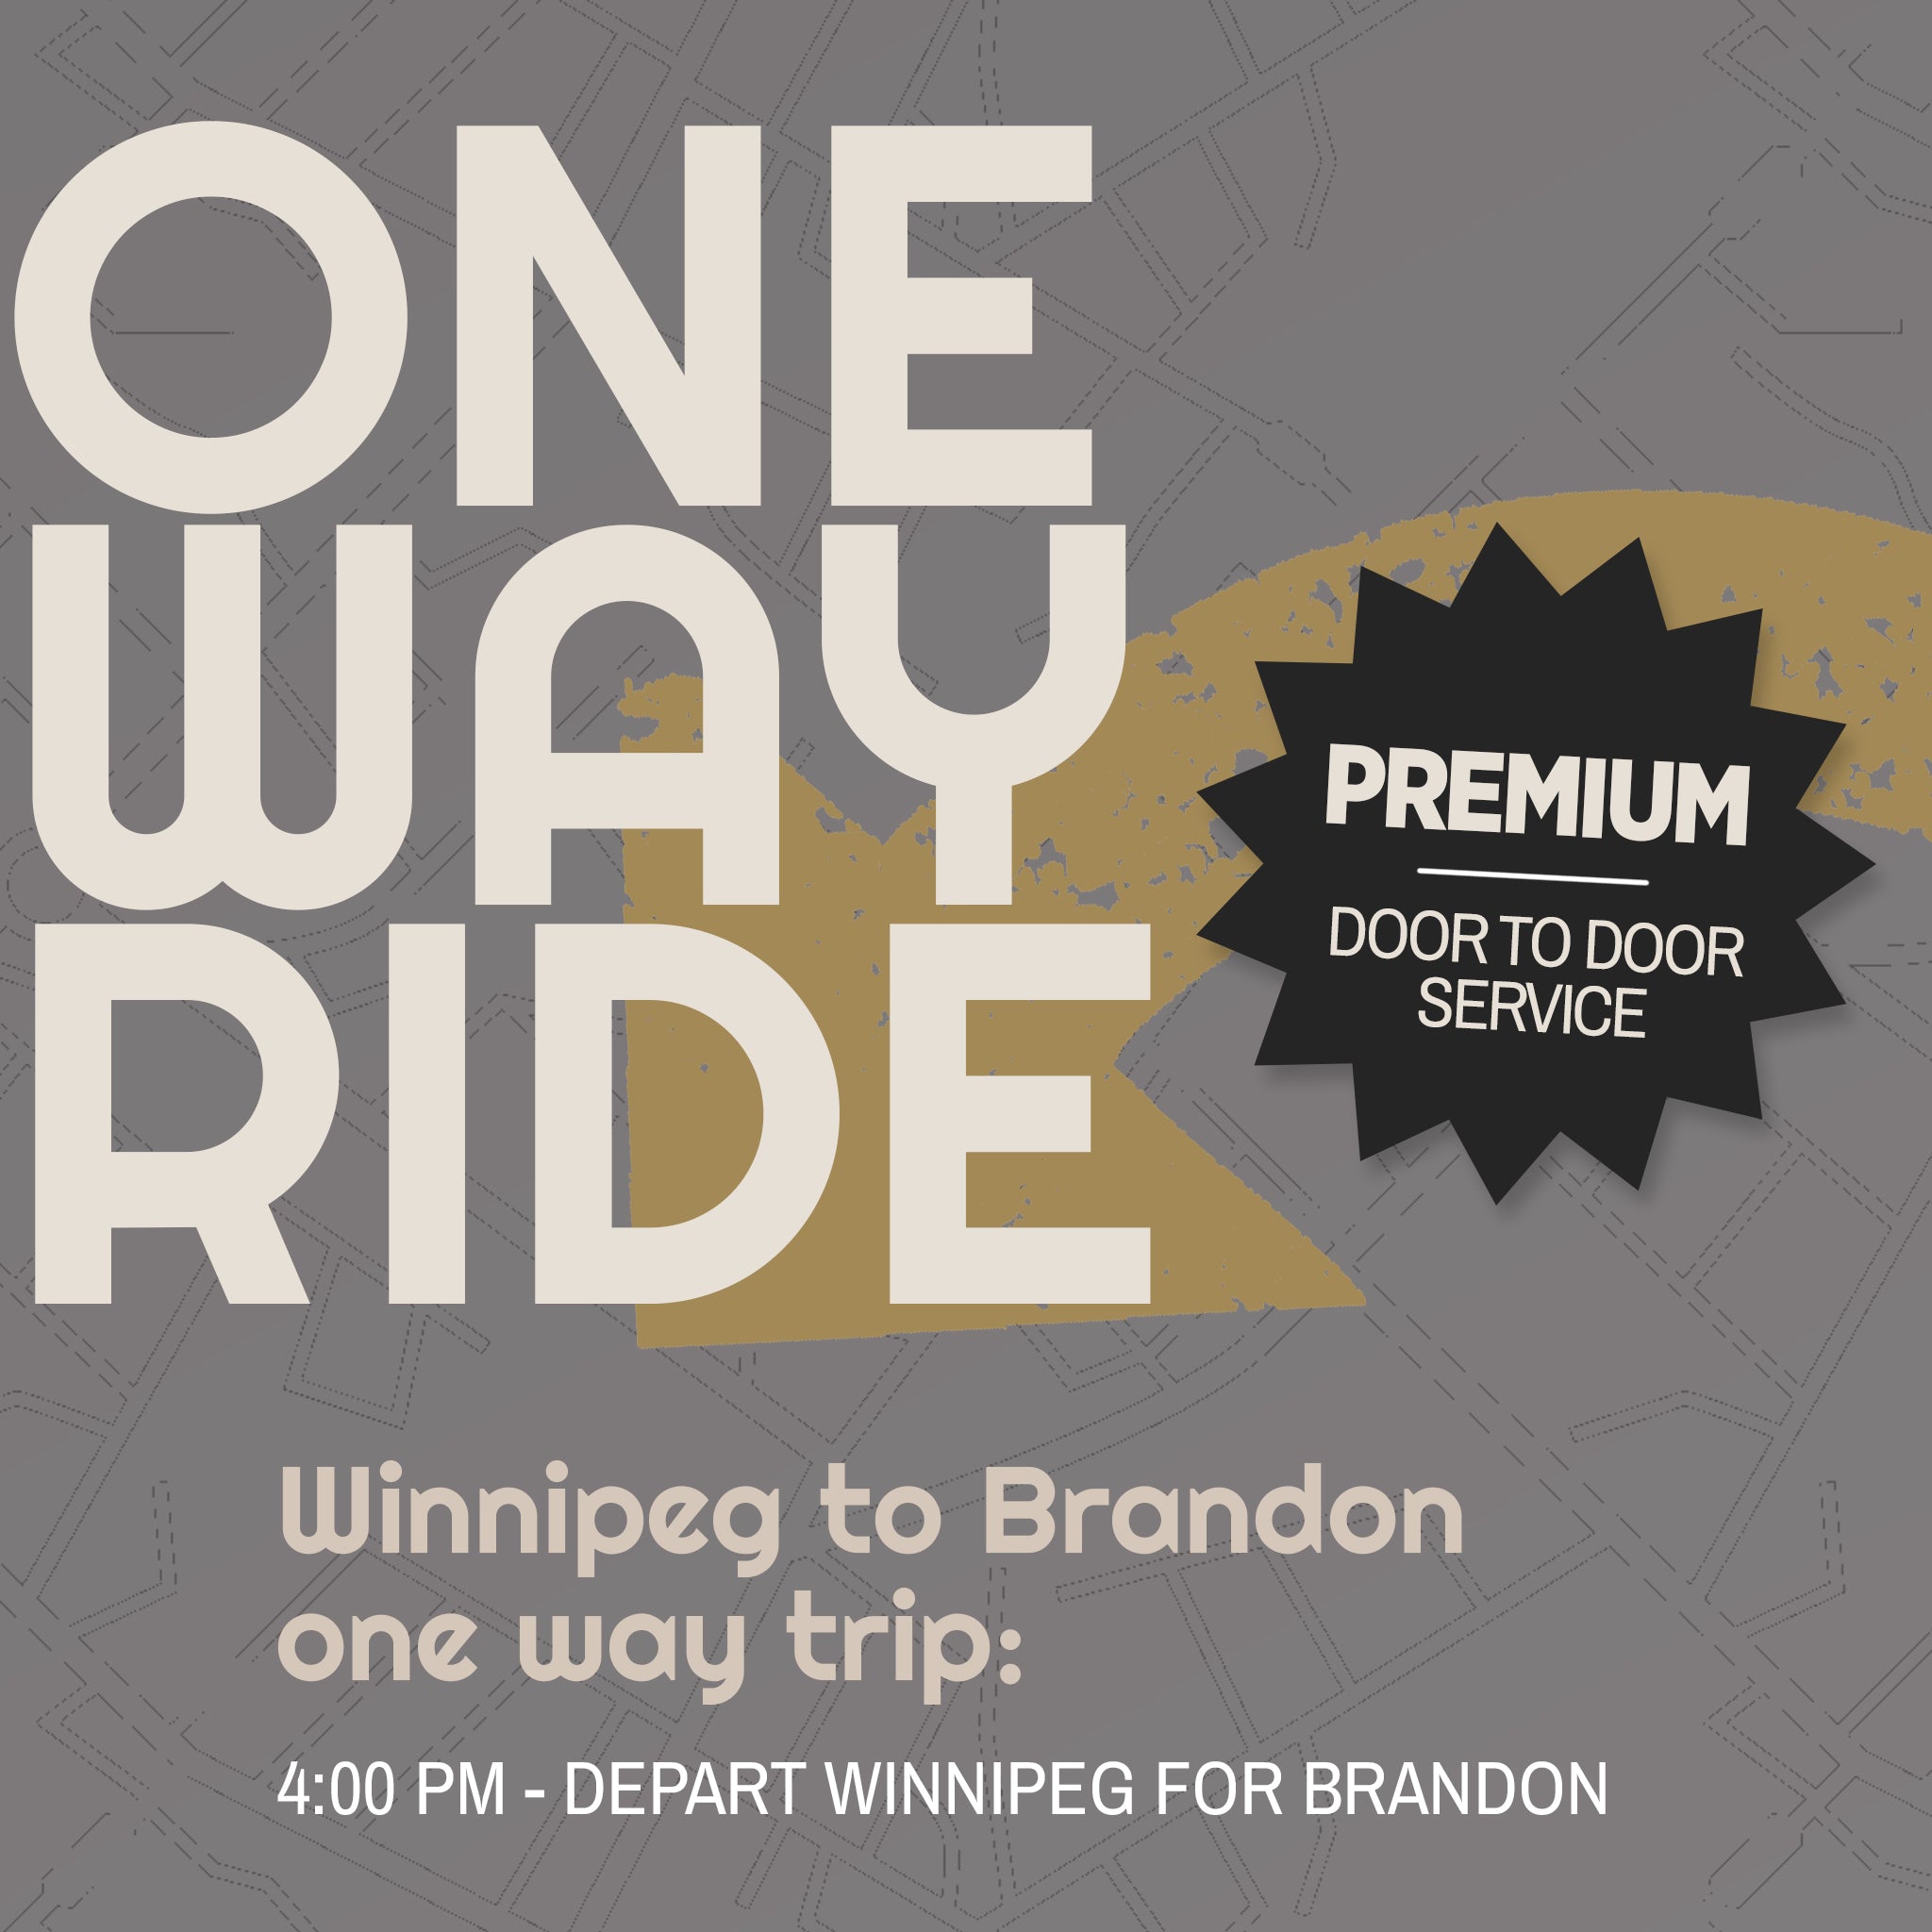 Premium - One Way: Winnipeg to Brandon